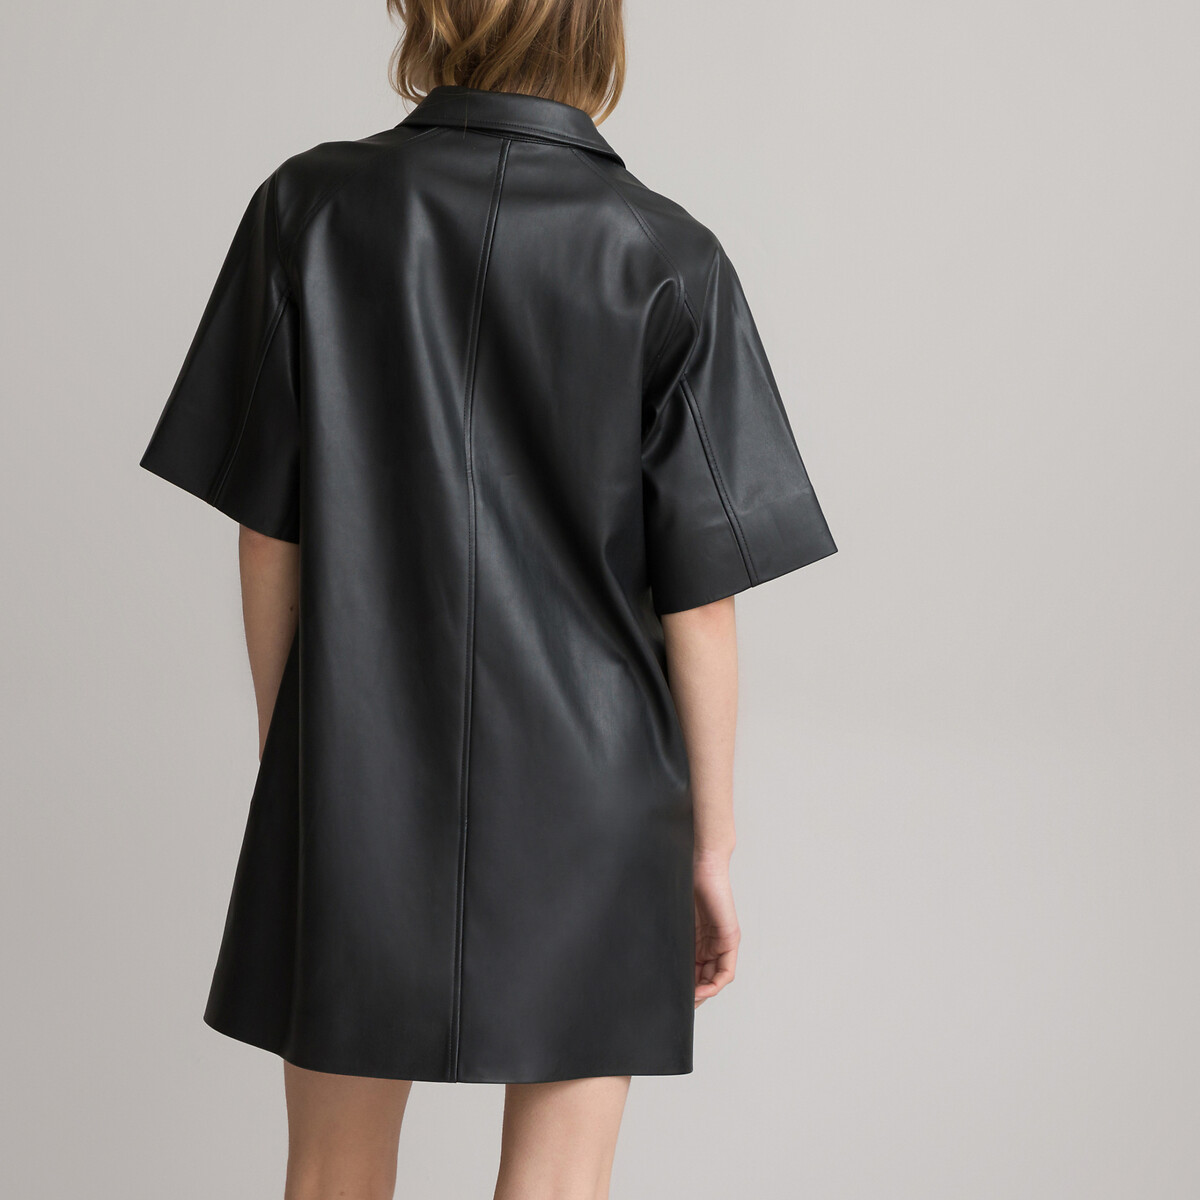 Платье Прямое короткое из искусственной кожи 54 черный LaRedoute, размер 54 - фото 4